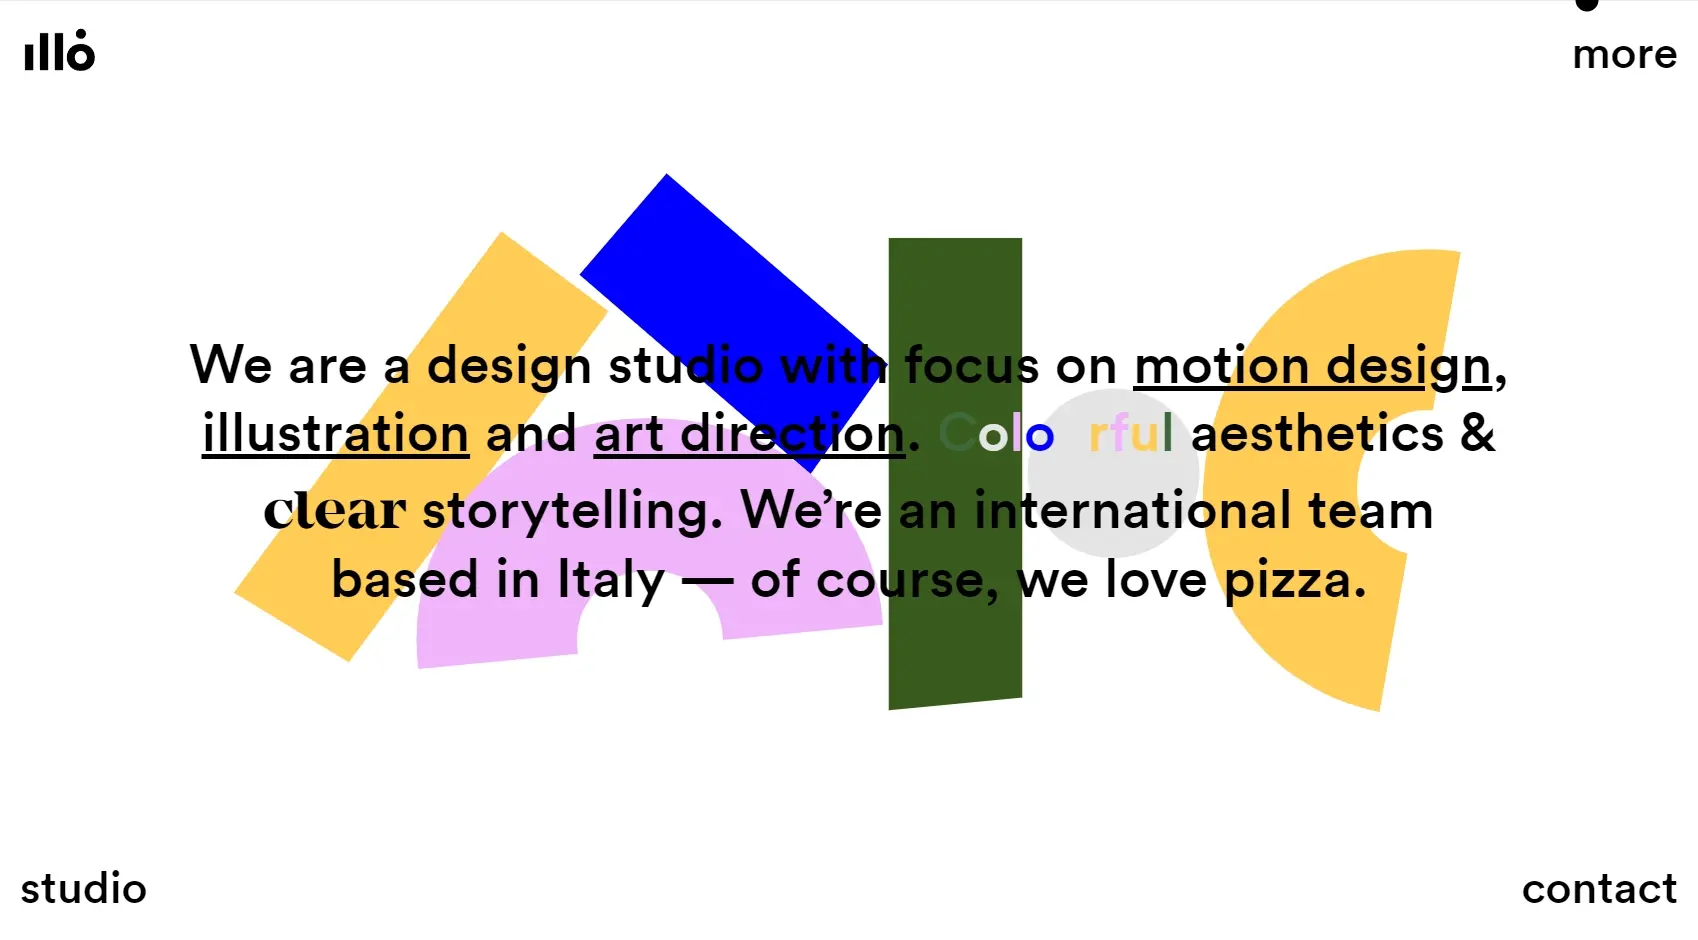 Blogduwebdesign exemples sites studio motion design illo